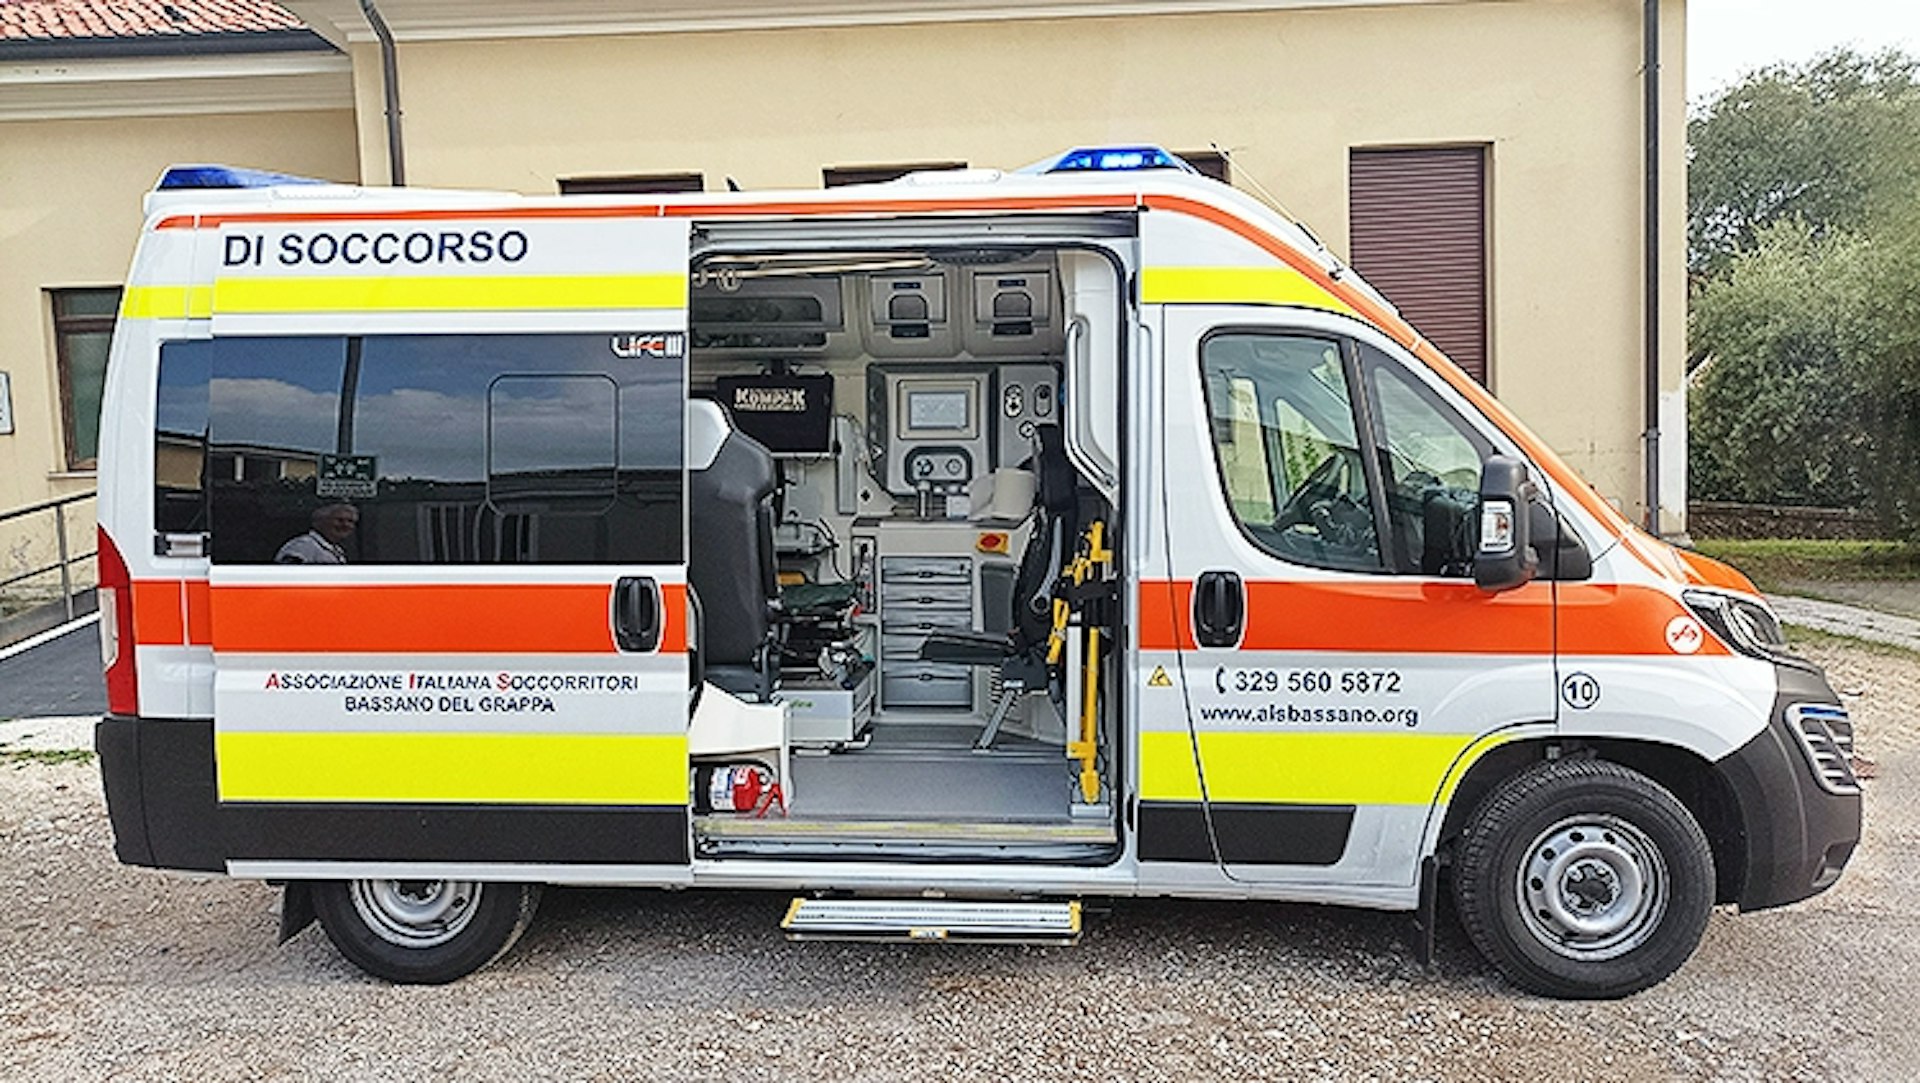 La nostra Nuova Ambulanza • News • Associazione Italiana Soccorritori Bassano del Grappa